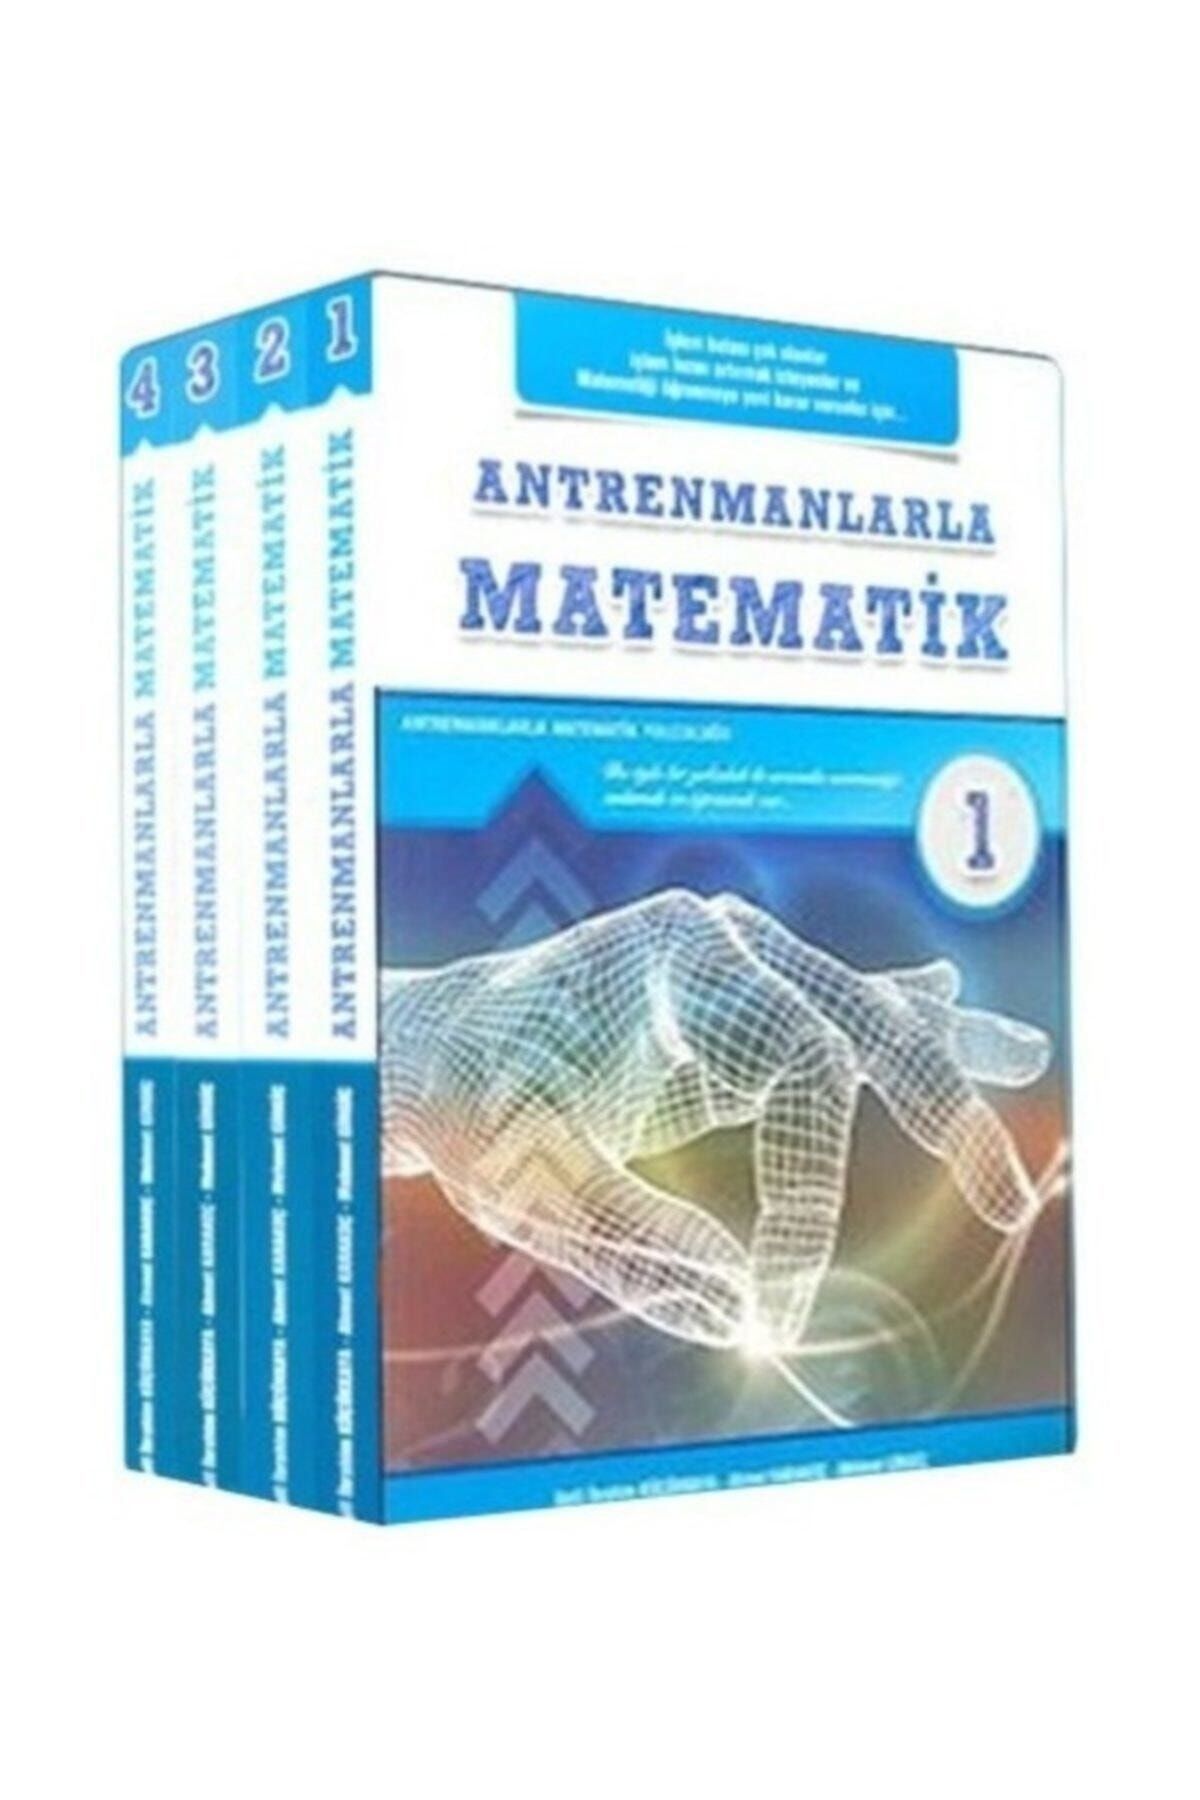 Antrenman Yayınları Antrenmanlarla Matematik (1-2-3-4 Kitap Takım)